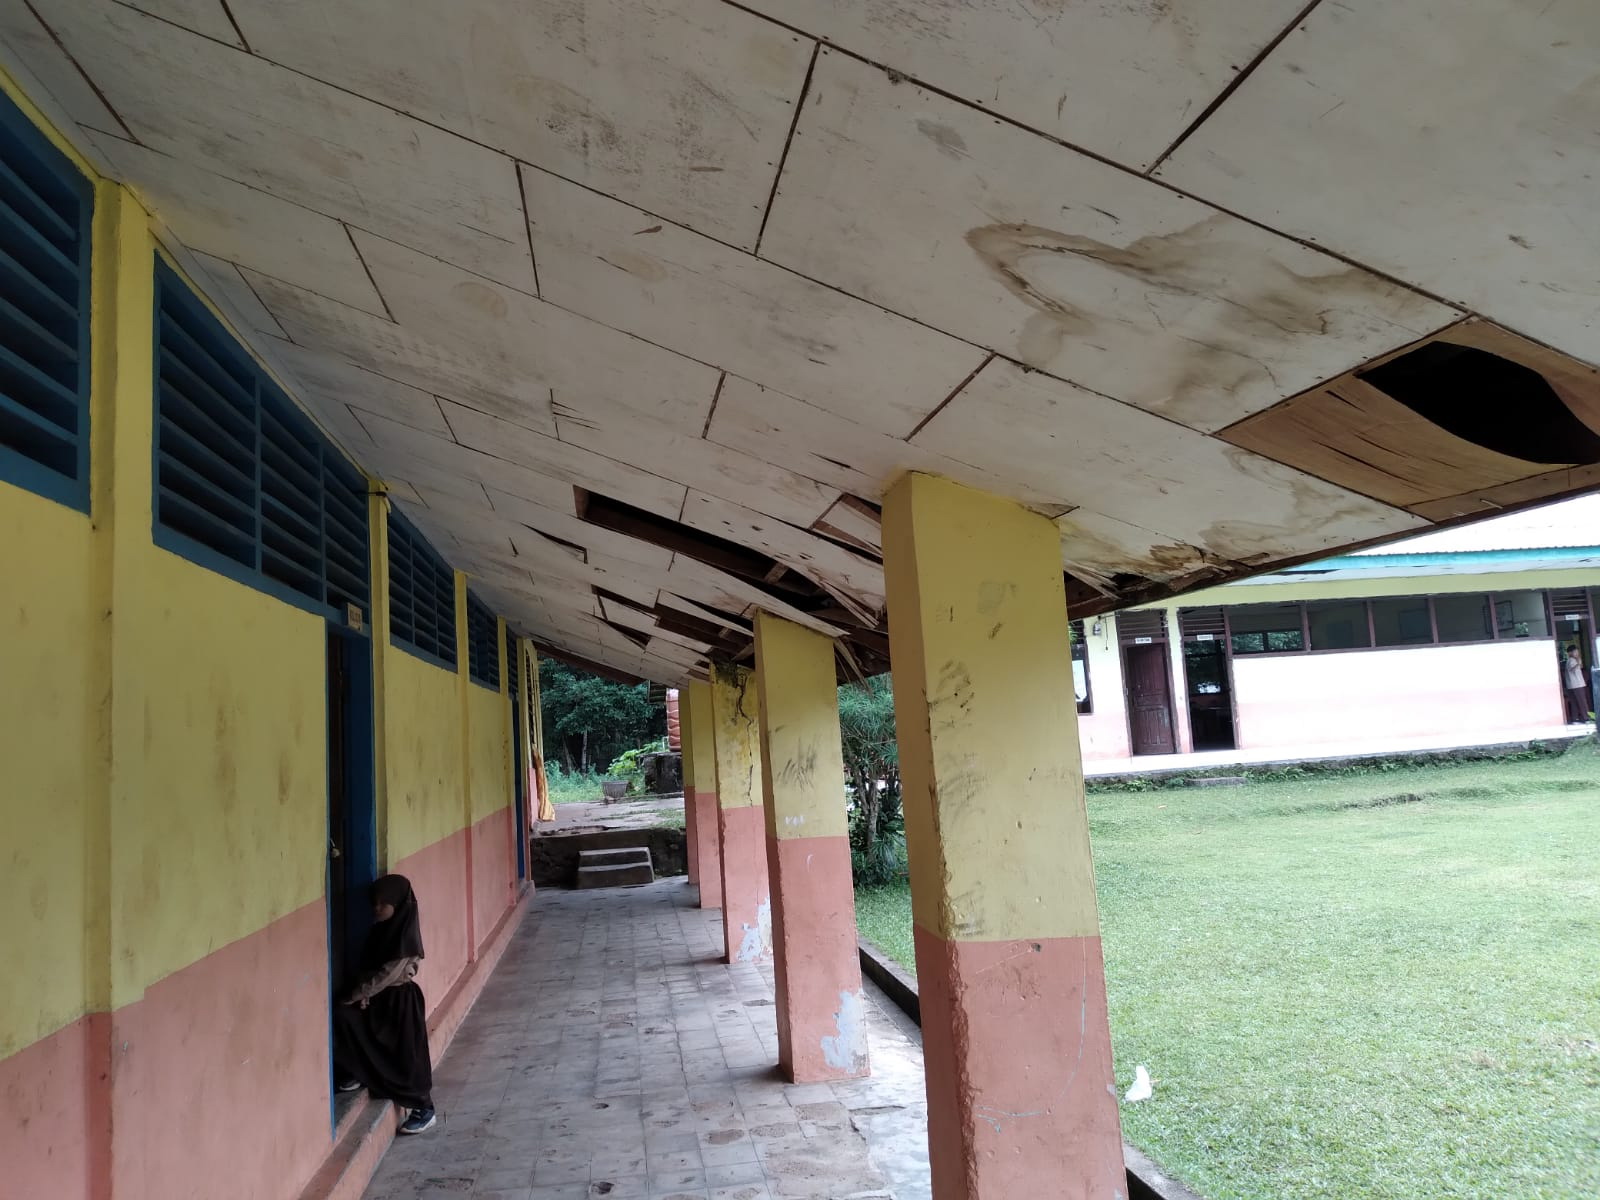 Bangunan SDN 96 Ujung Tanjung Tak Layak, Kadis Pendidikan Bungo: Harus Ada Pengajuan Proposal